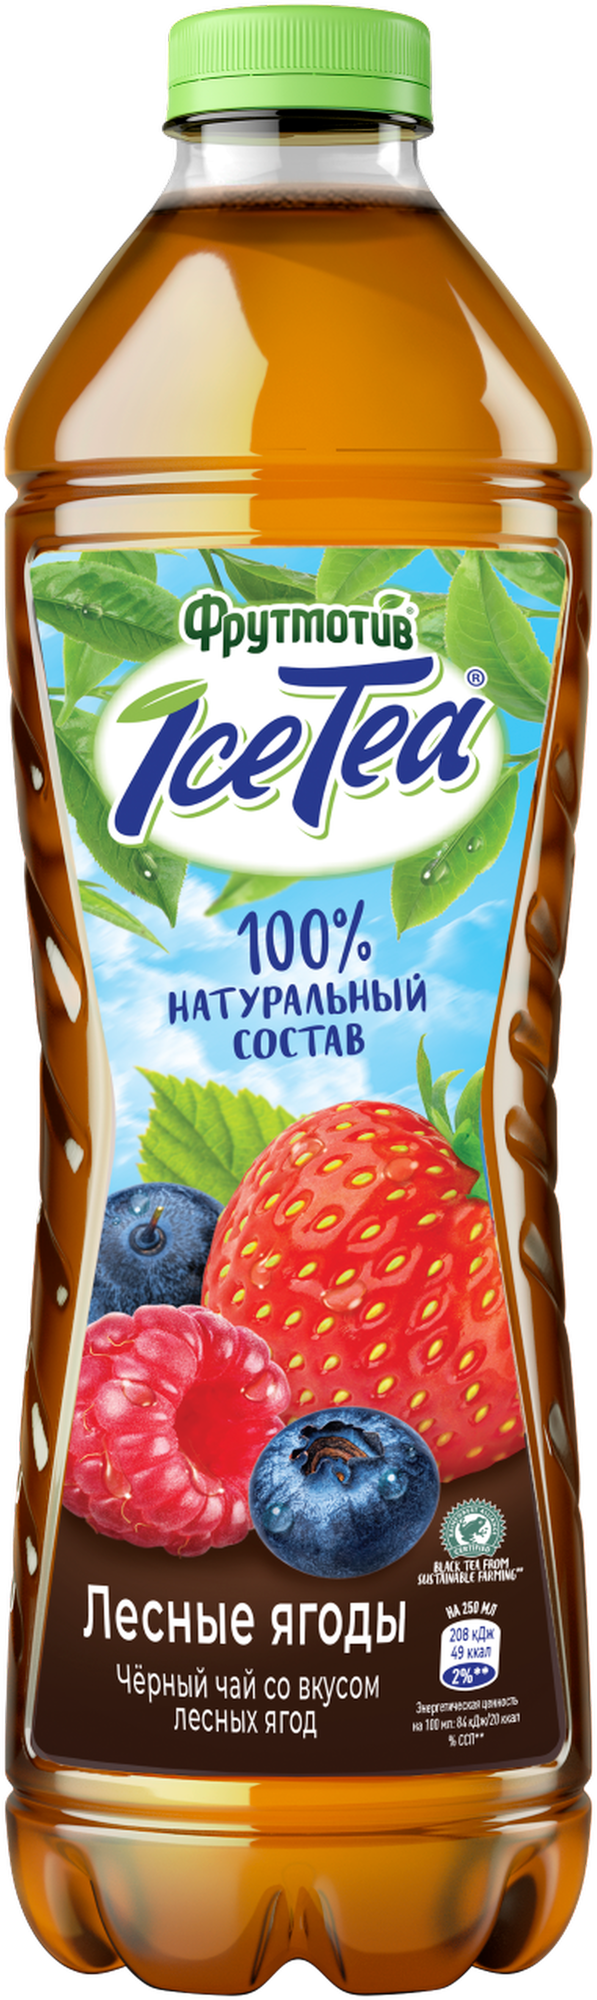 Напиток Фрутмотив IceTea Черный чай холодный Лесные ягоды 1.5л